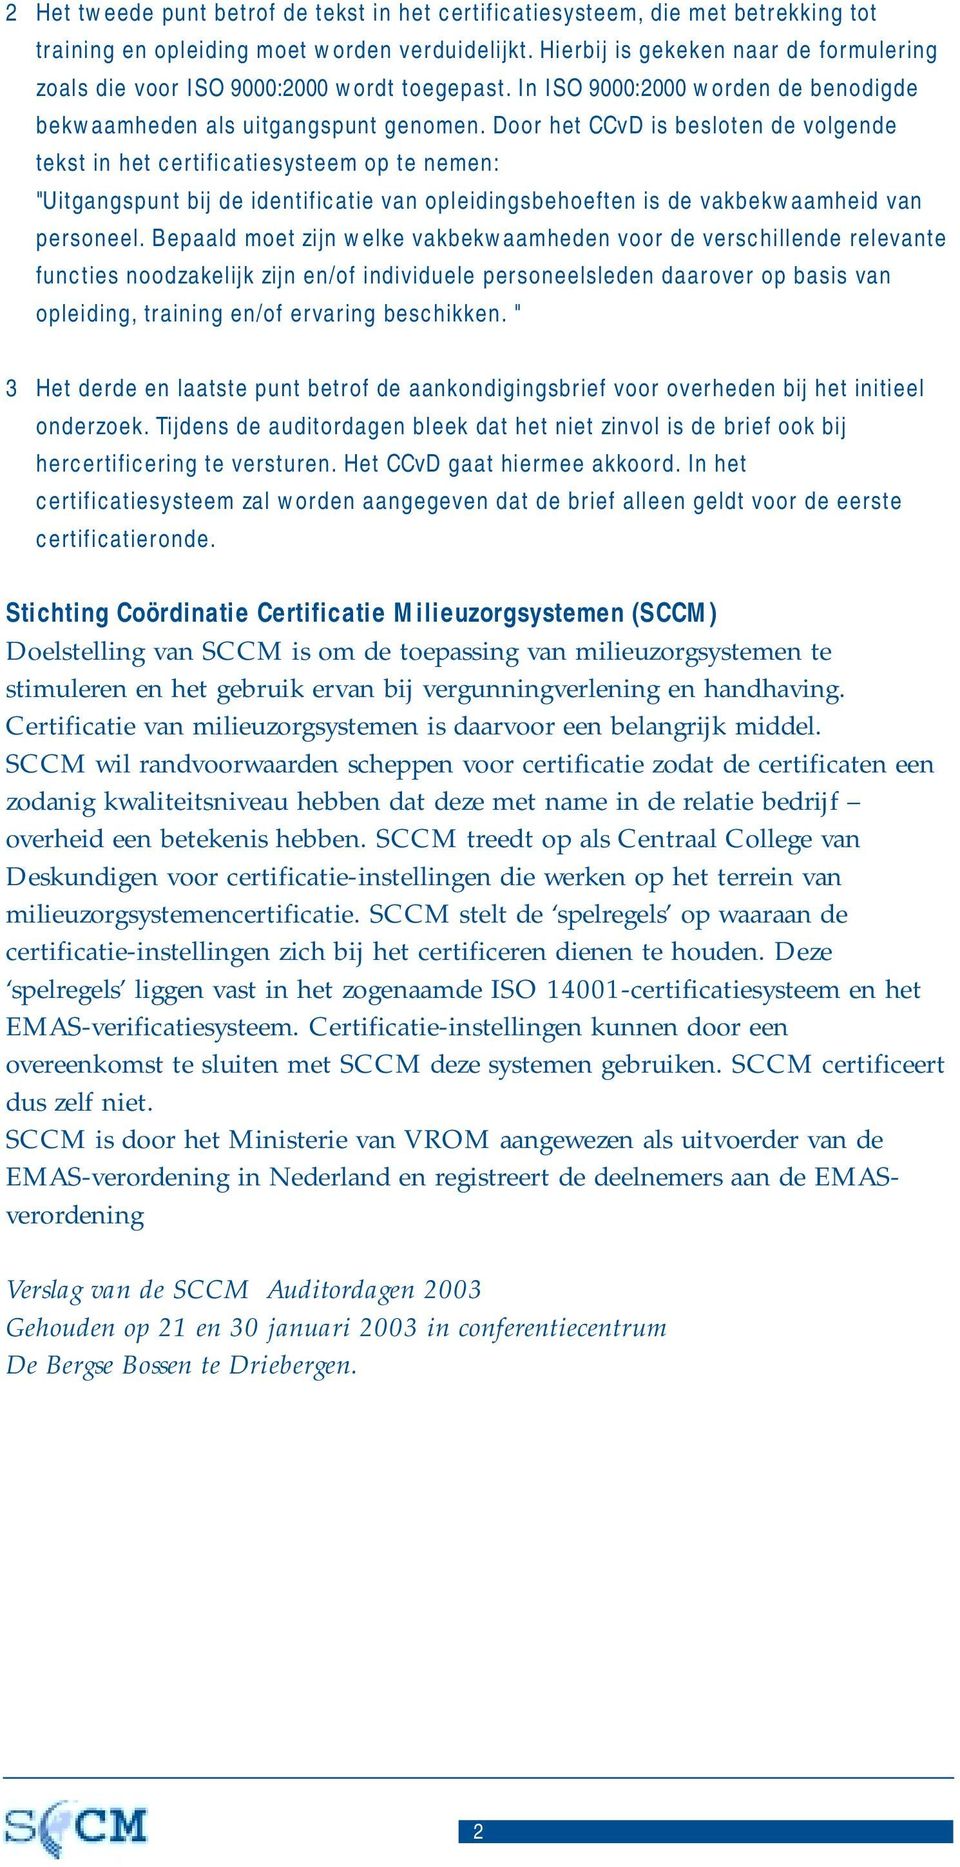 Door het CCvD is besloten de volgende tekst in het certificatiesysteem op te nemen: "Uitgangspunt bij de identificatie van opleidingsbehoeften is de vakbekwaamheid van personeel.